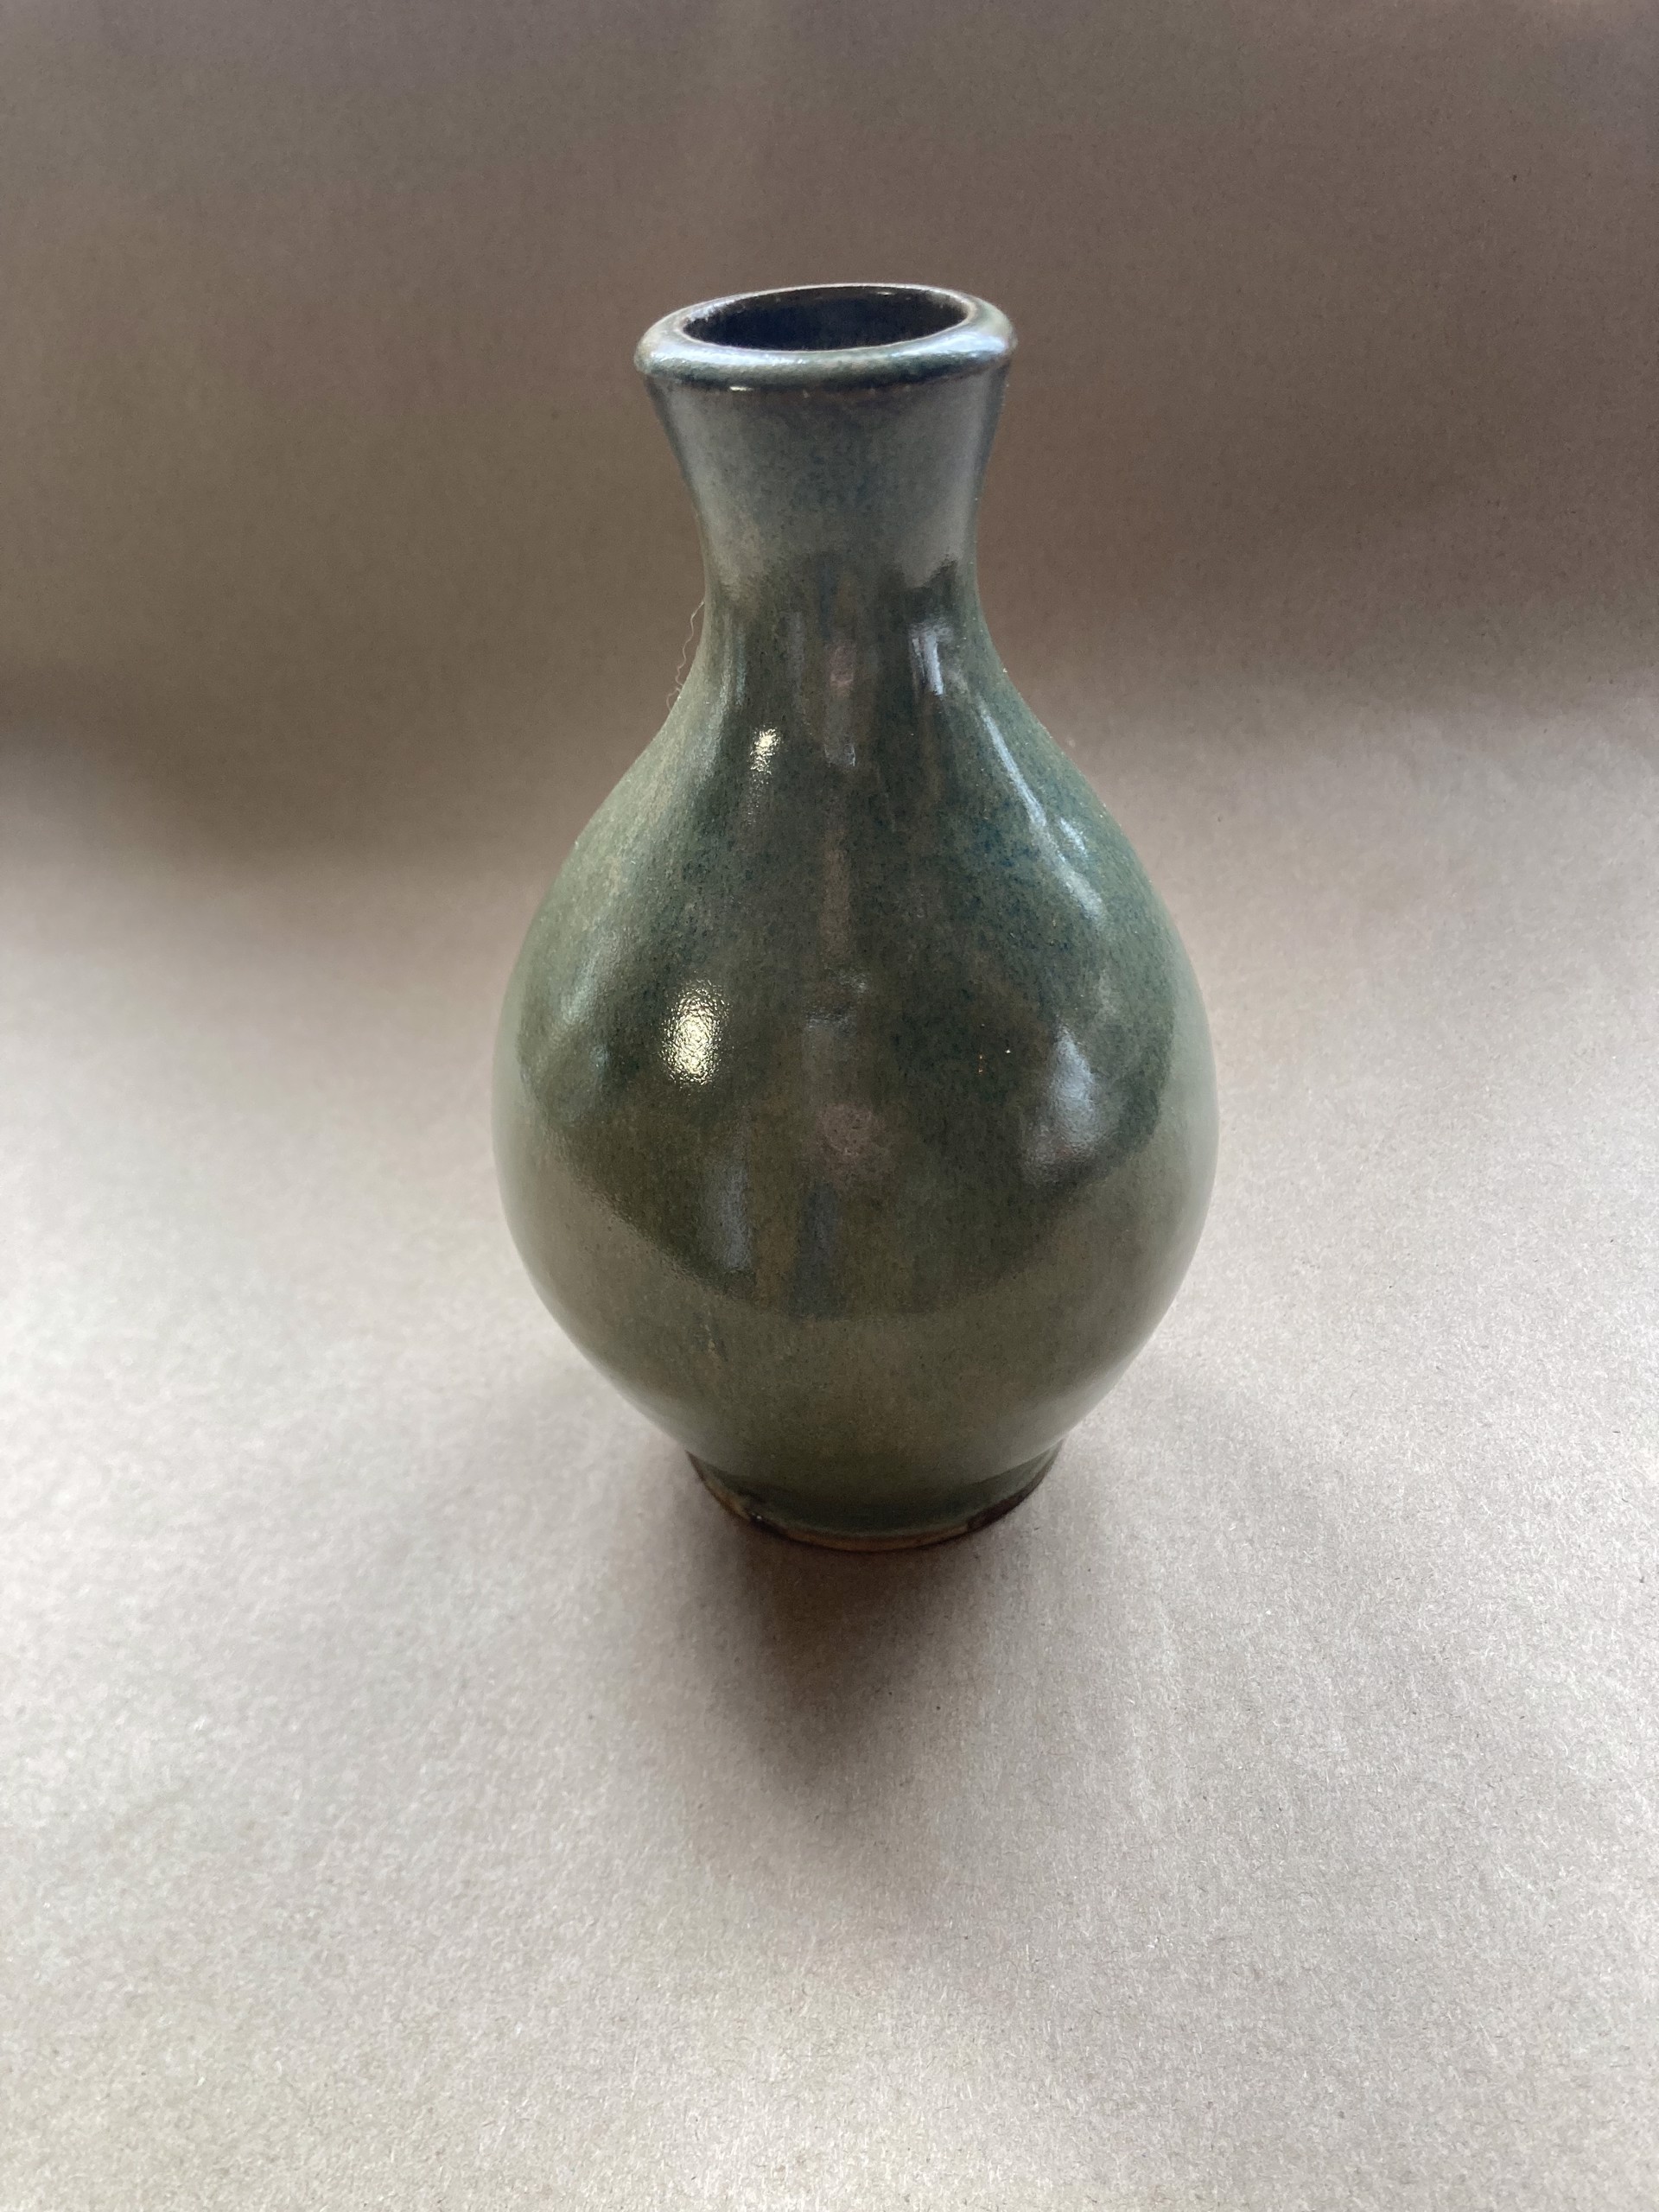 #16 Small Nouveau Vase by Michael Schael